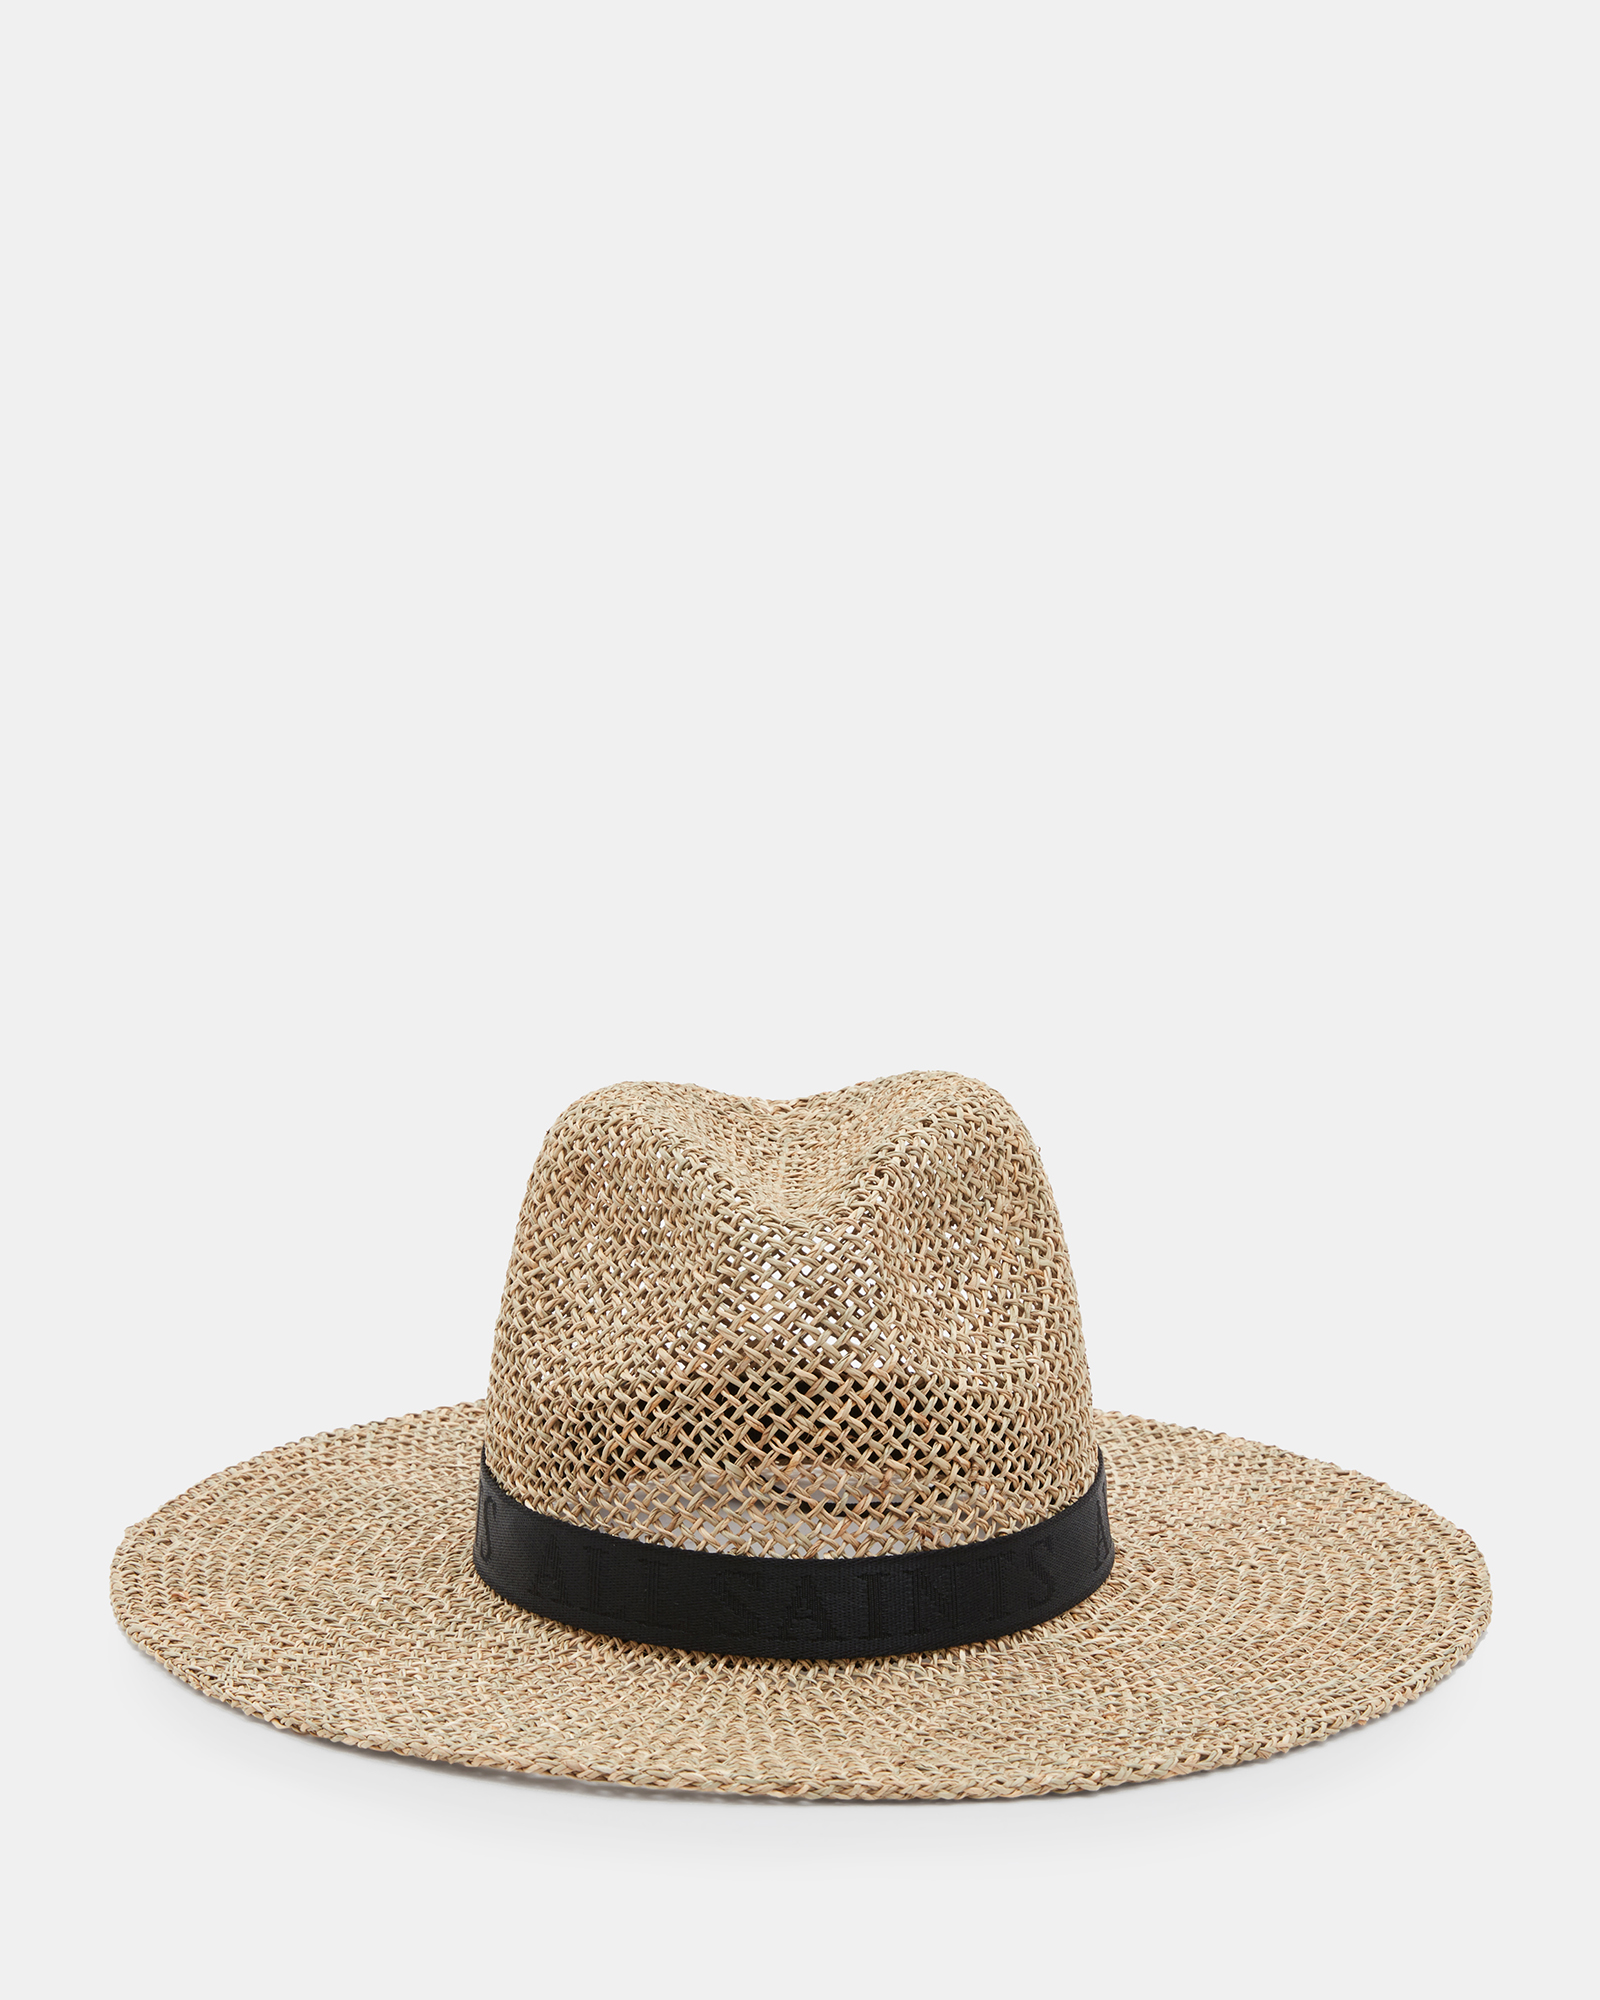 AllSaints Suvi Straw Fedora Hat,, Brown